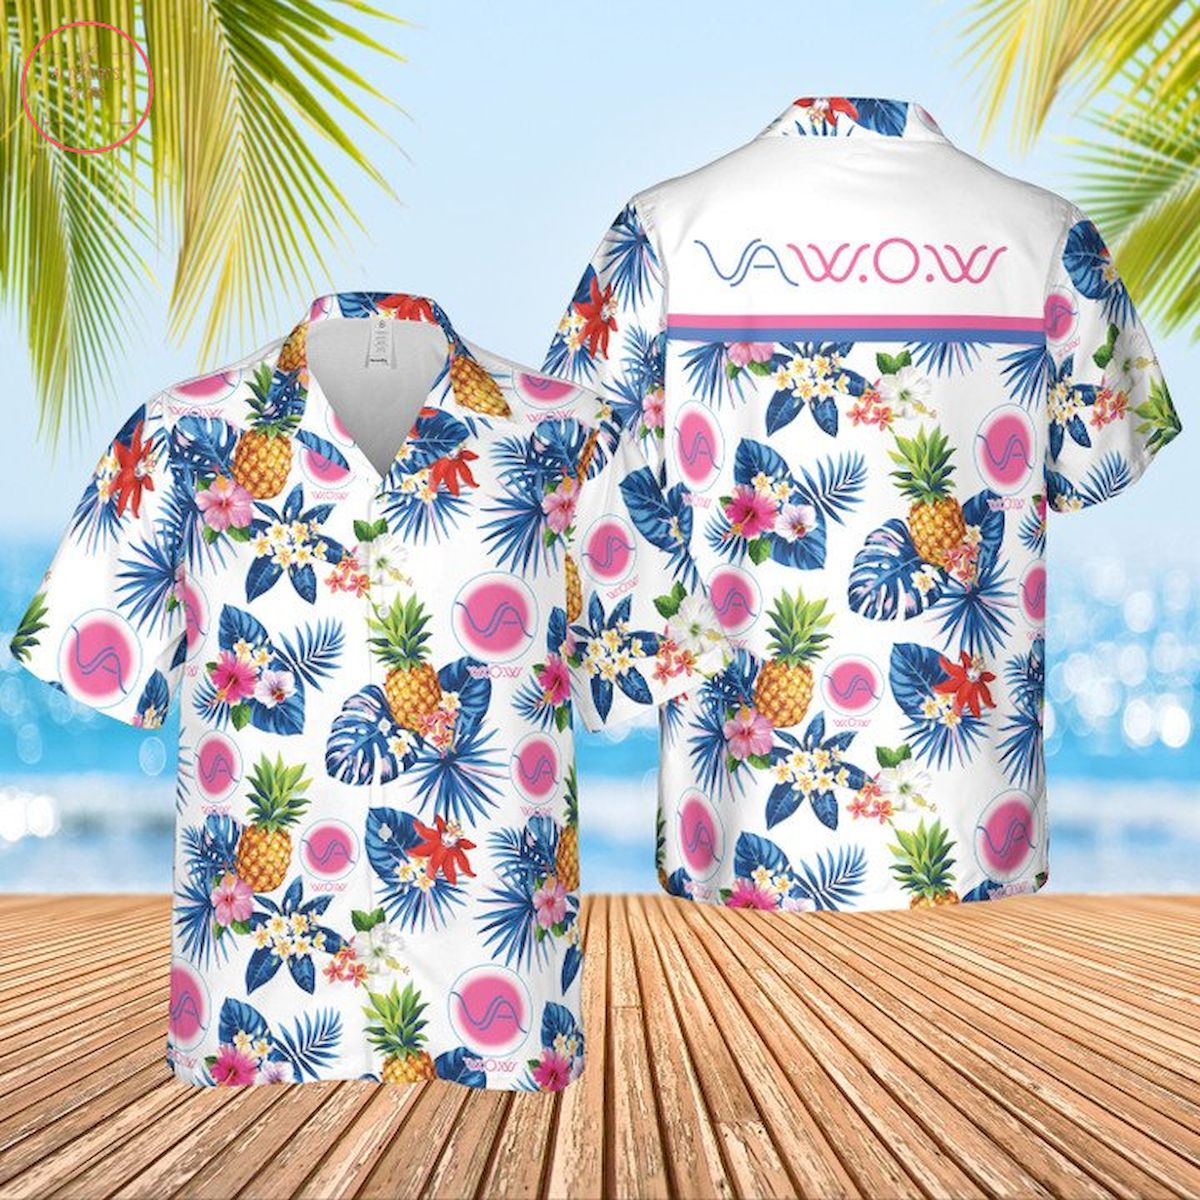 VA W.O.W. Condoms Hawaiian Shirt and Shorts